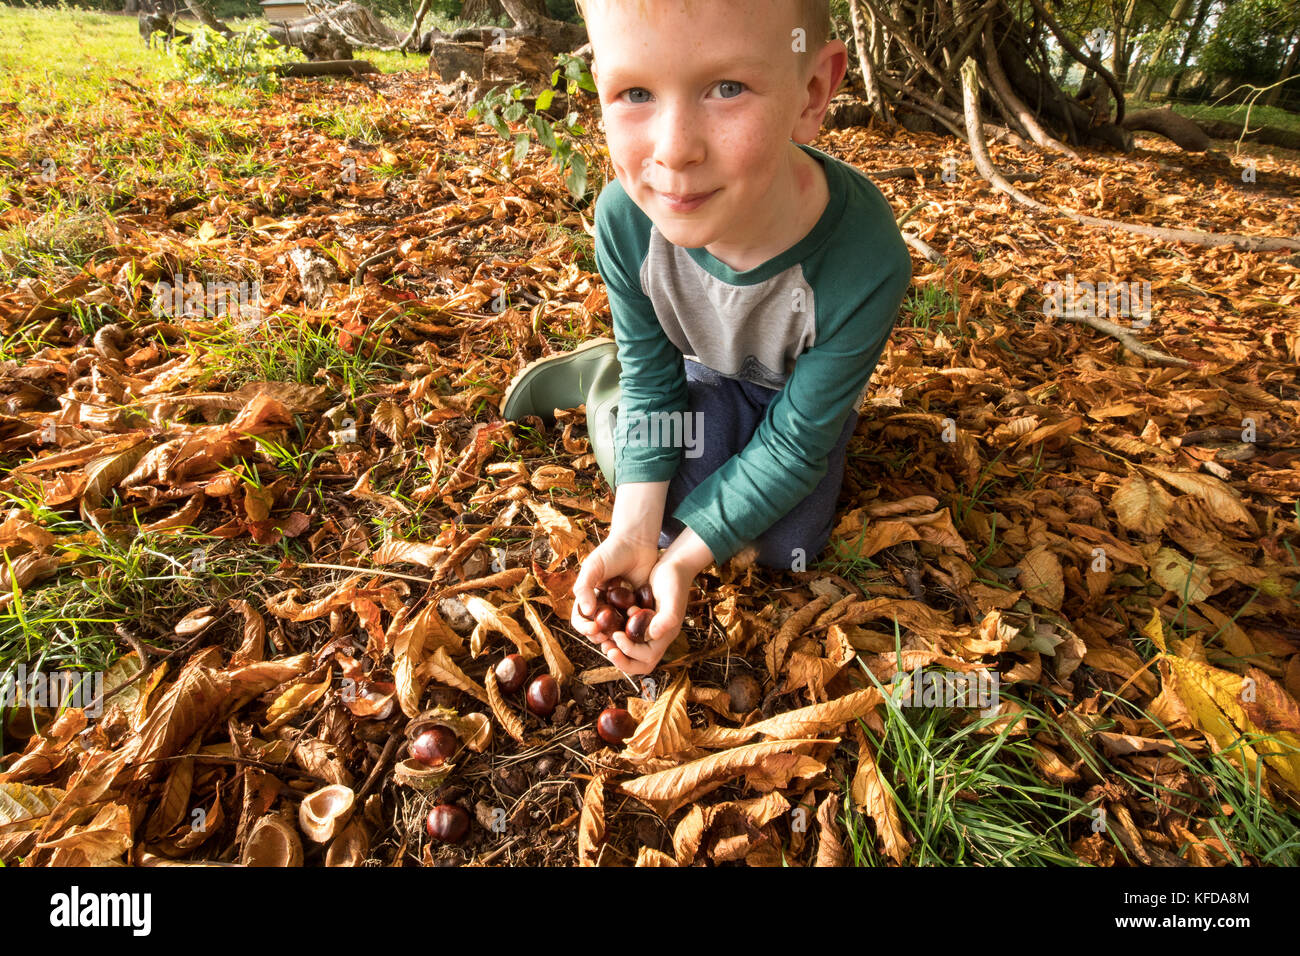 La collecte de l'enfant sous un marronnier conkers tree à l'automne - de jouer un jeu de saison, traditionnel en Grande-Bretagne. Banque D'Images